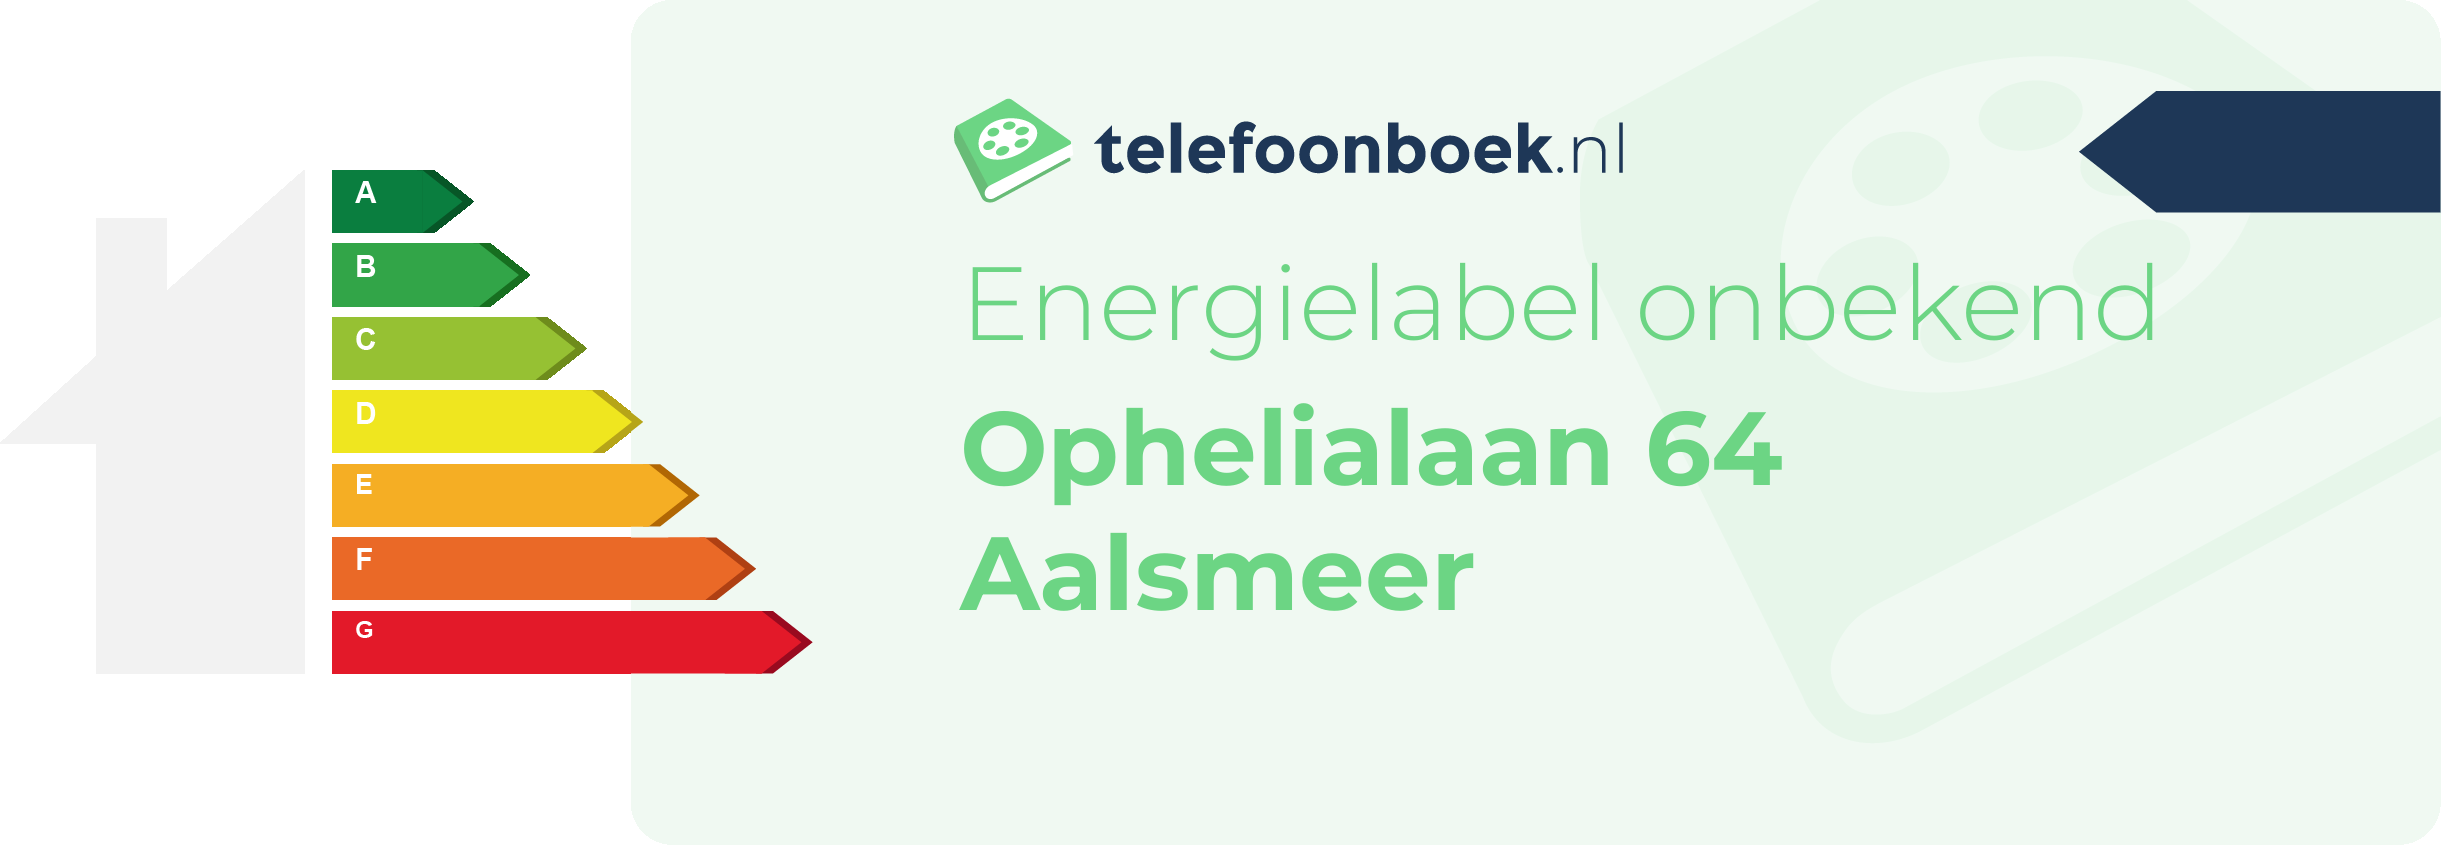 Energielabel Ophelialaan 64 Aalsmeer